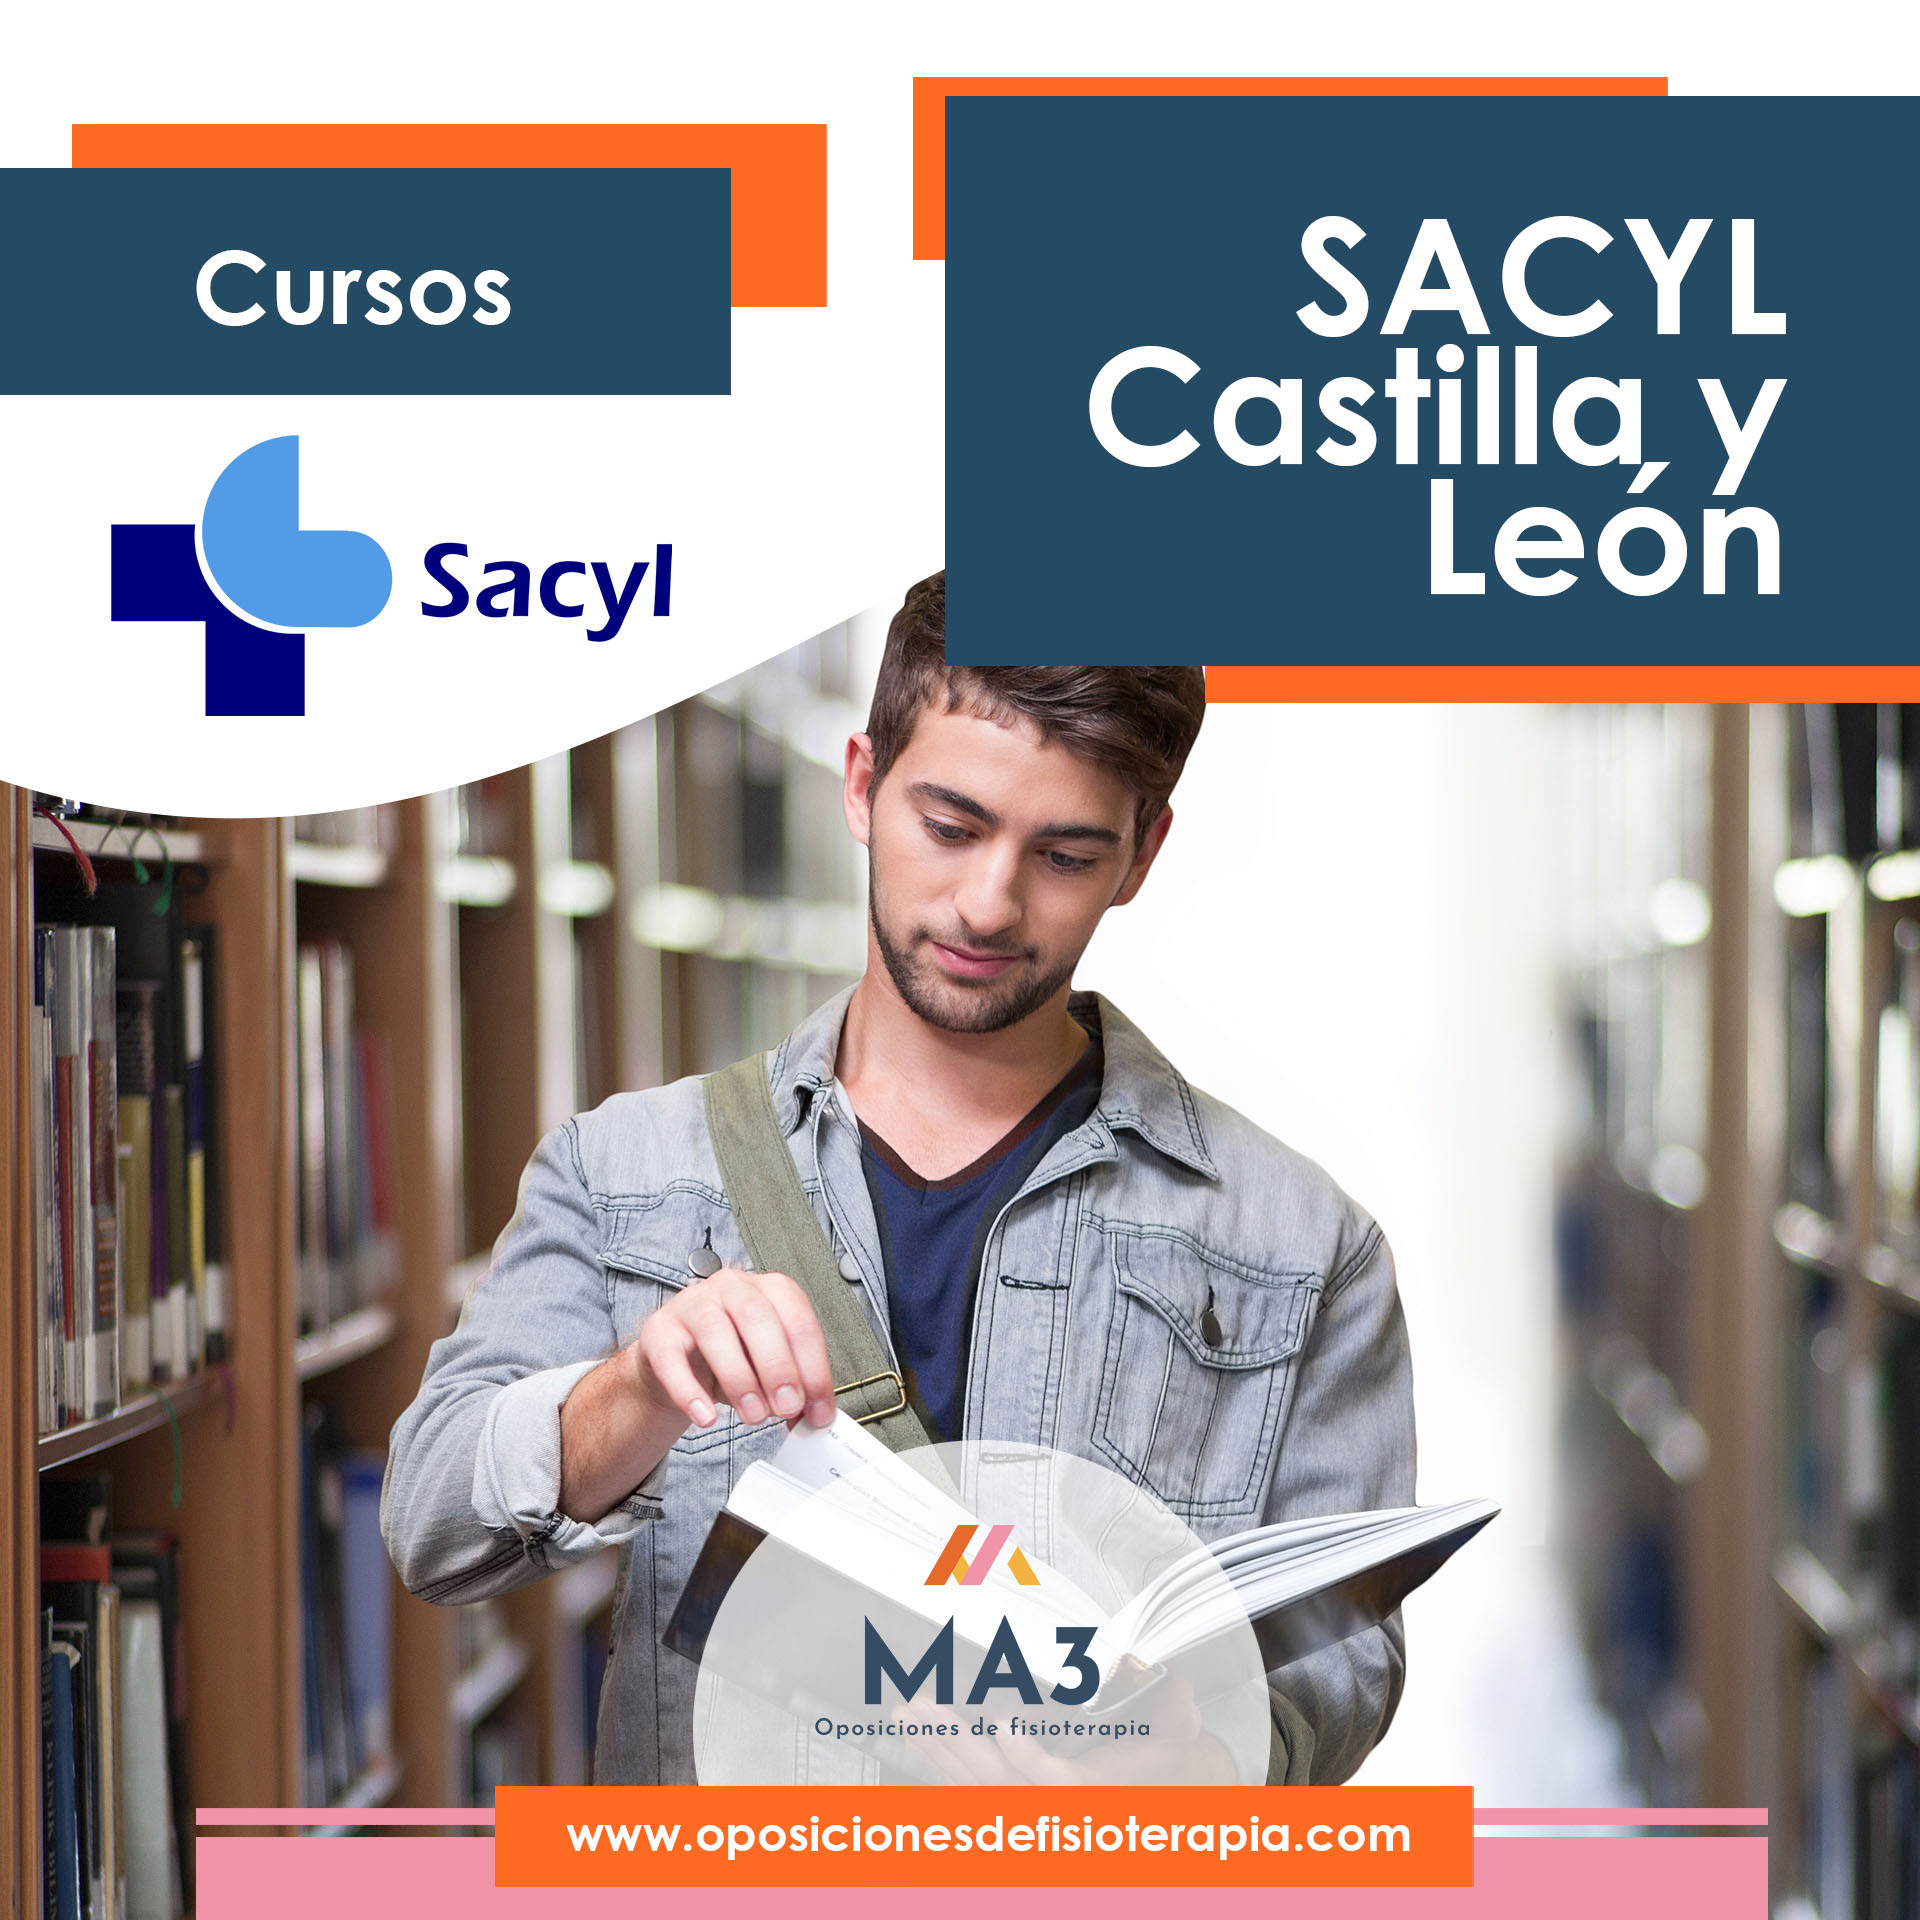 SACYL Castilla y León